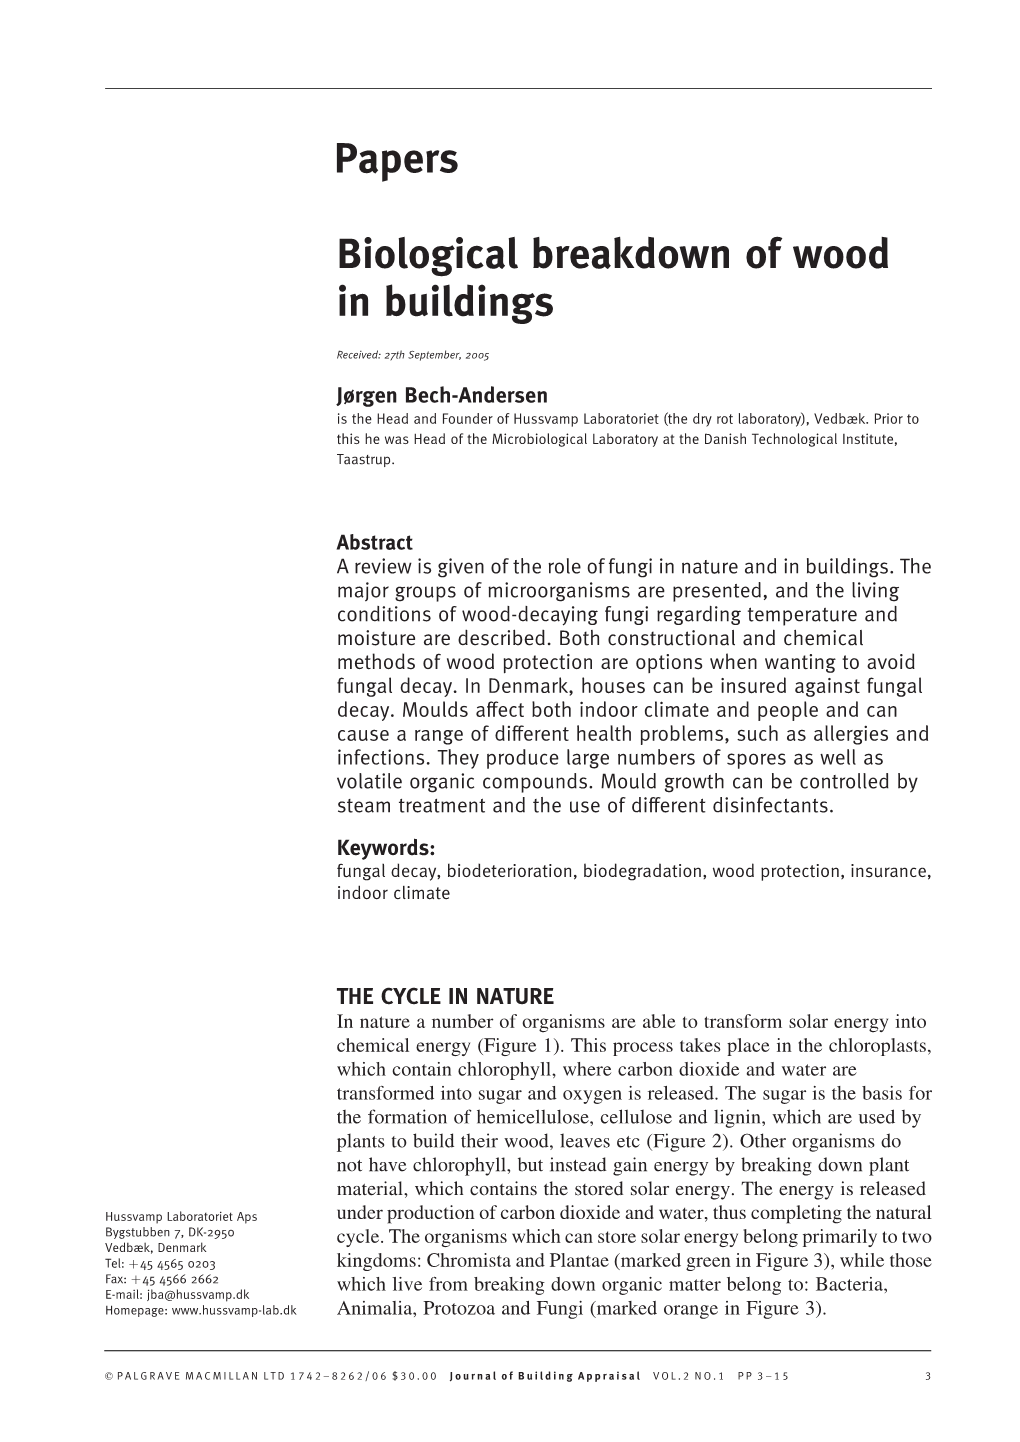 Papers Biological Breakdown of Wood in Buildings